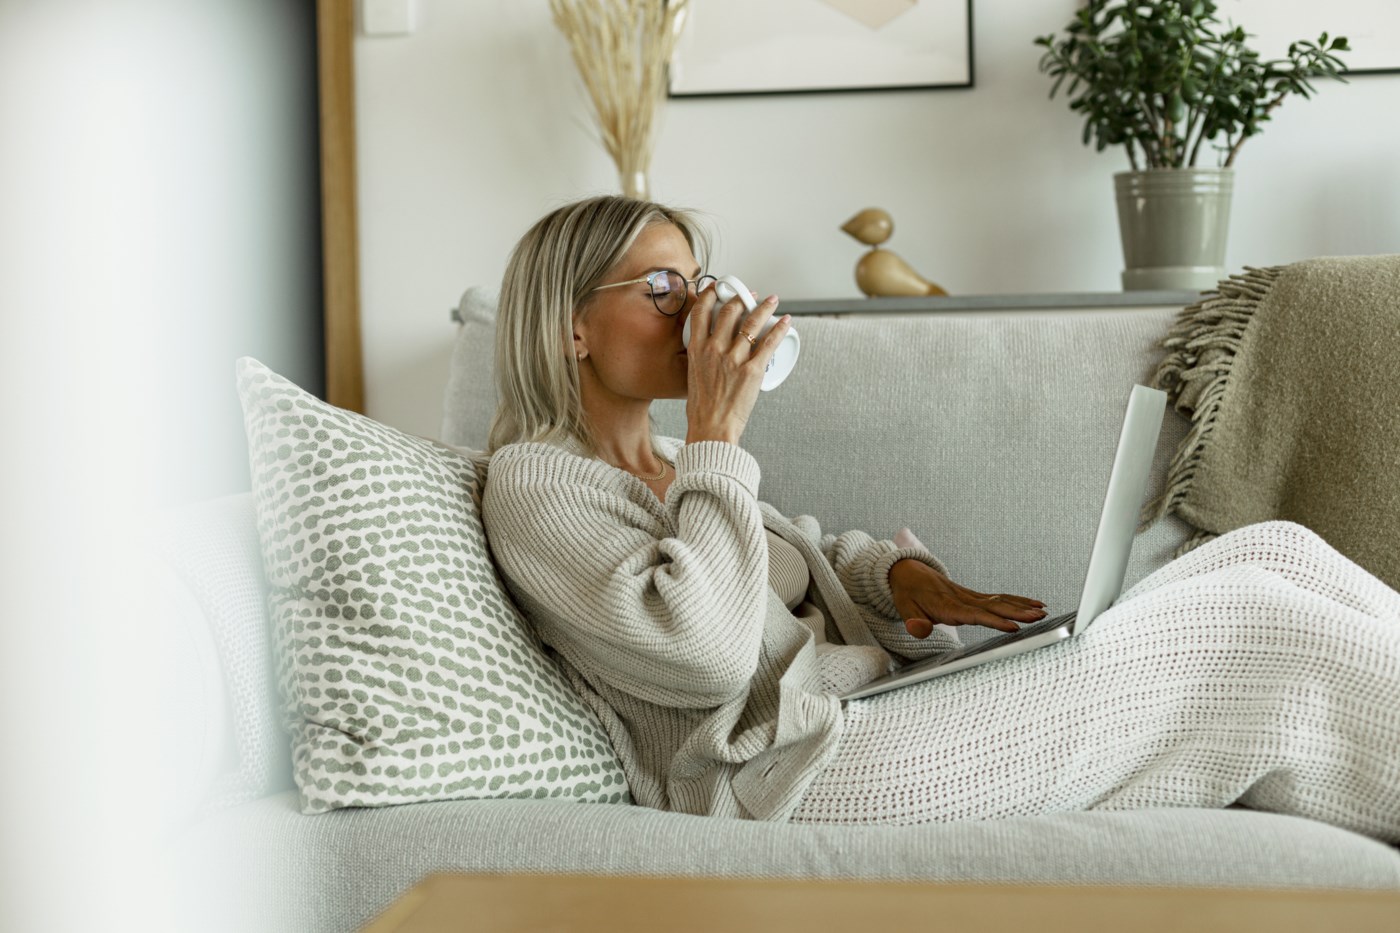 Kvinne lener seg tilbake på en sofa, drikker fra en kopp, og ser på en laptop på fanget sitt i et stilig innredet rom.